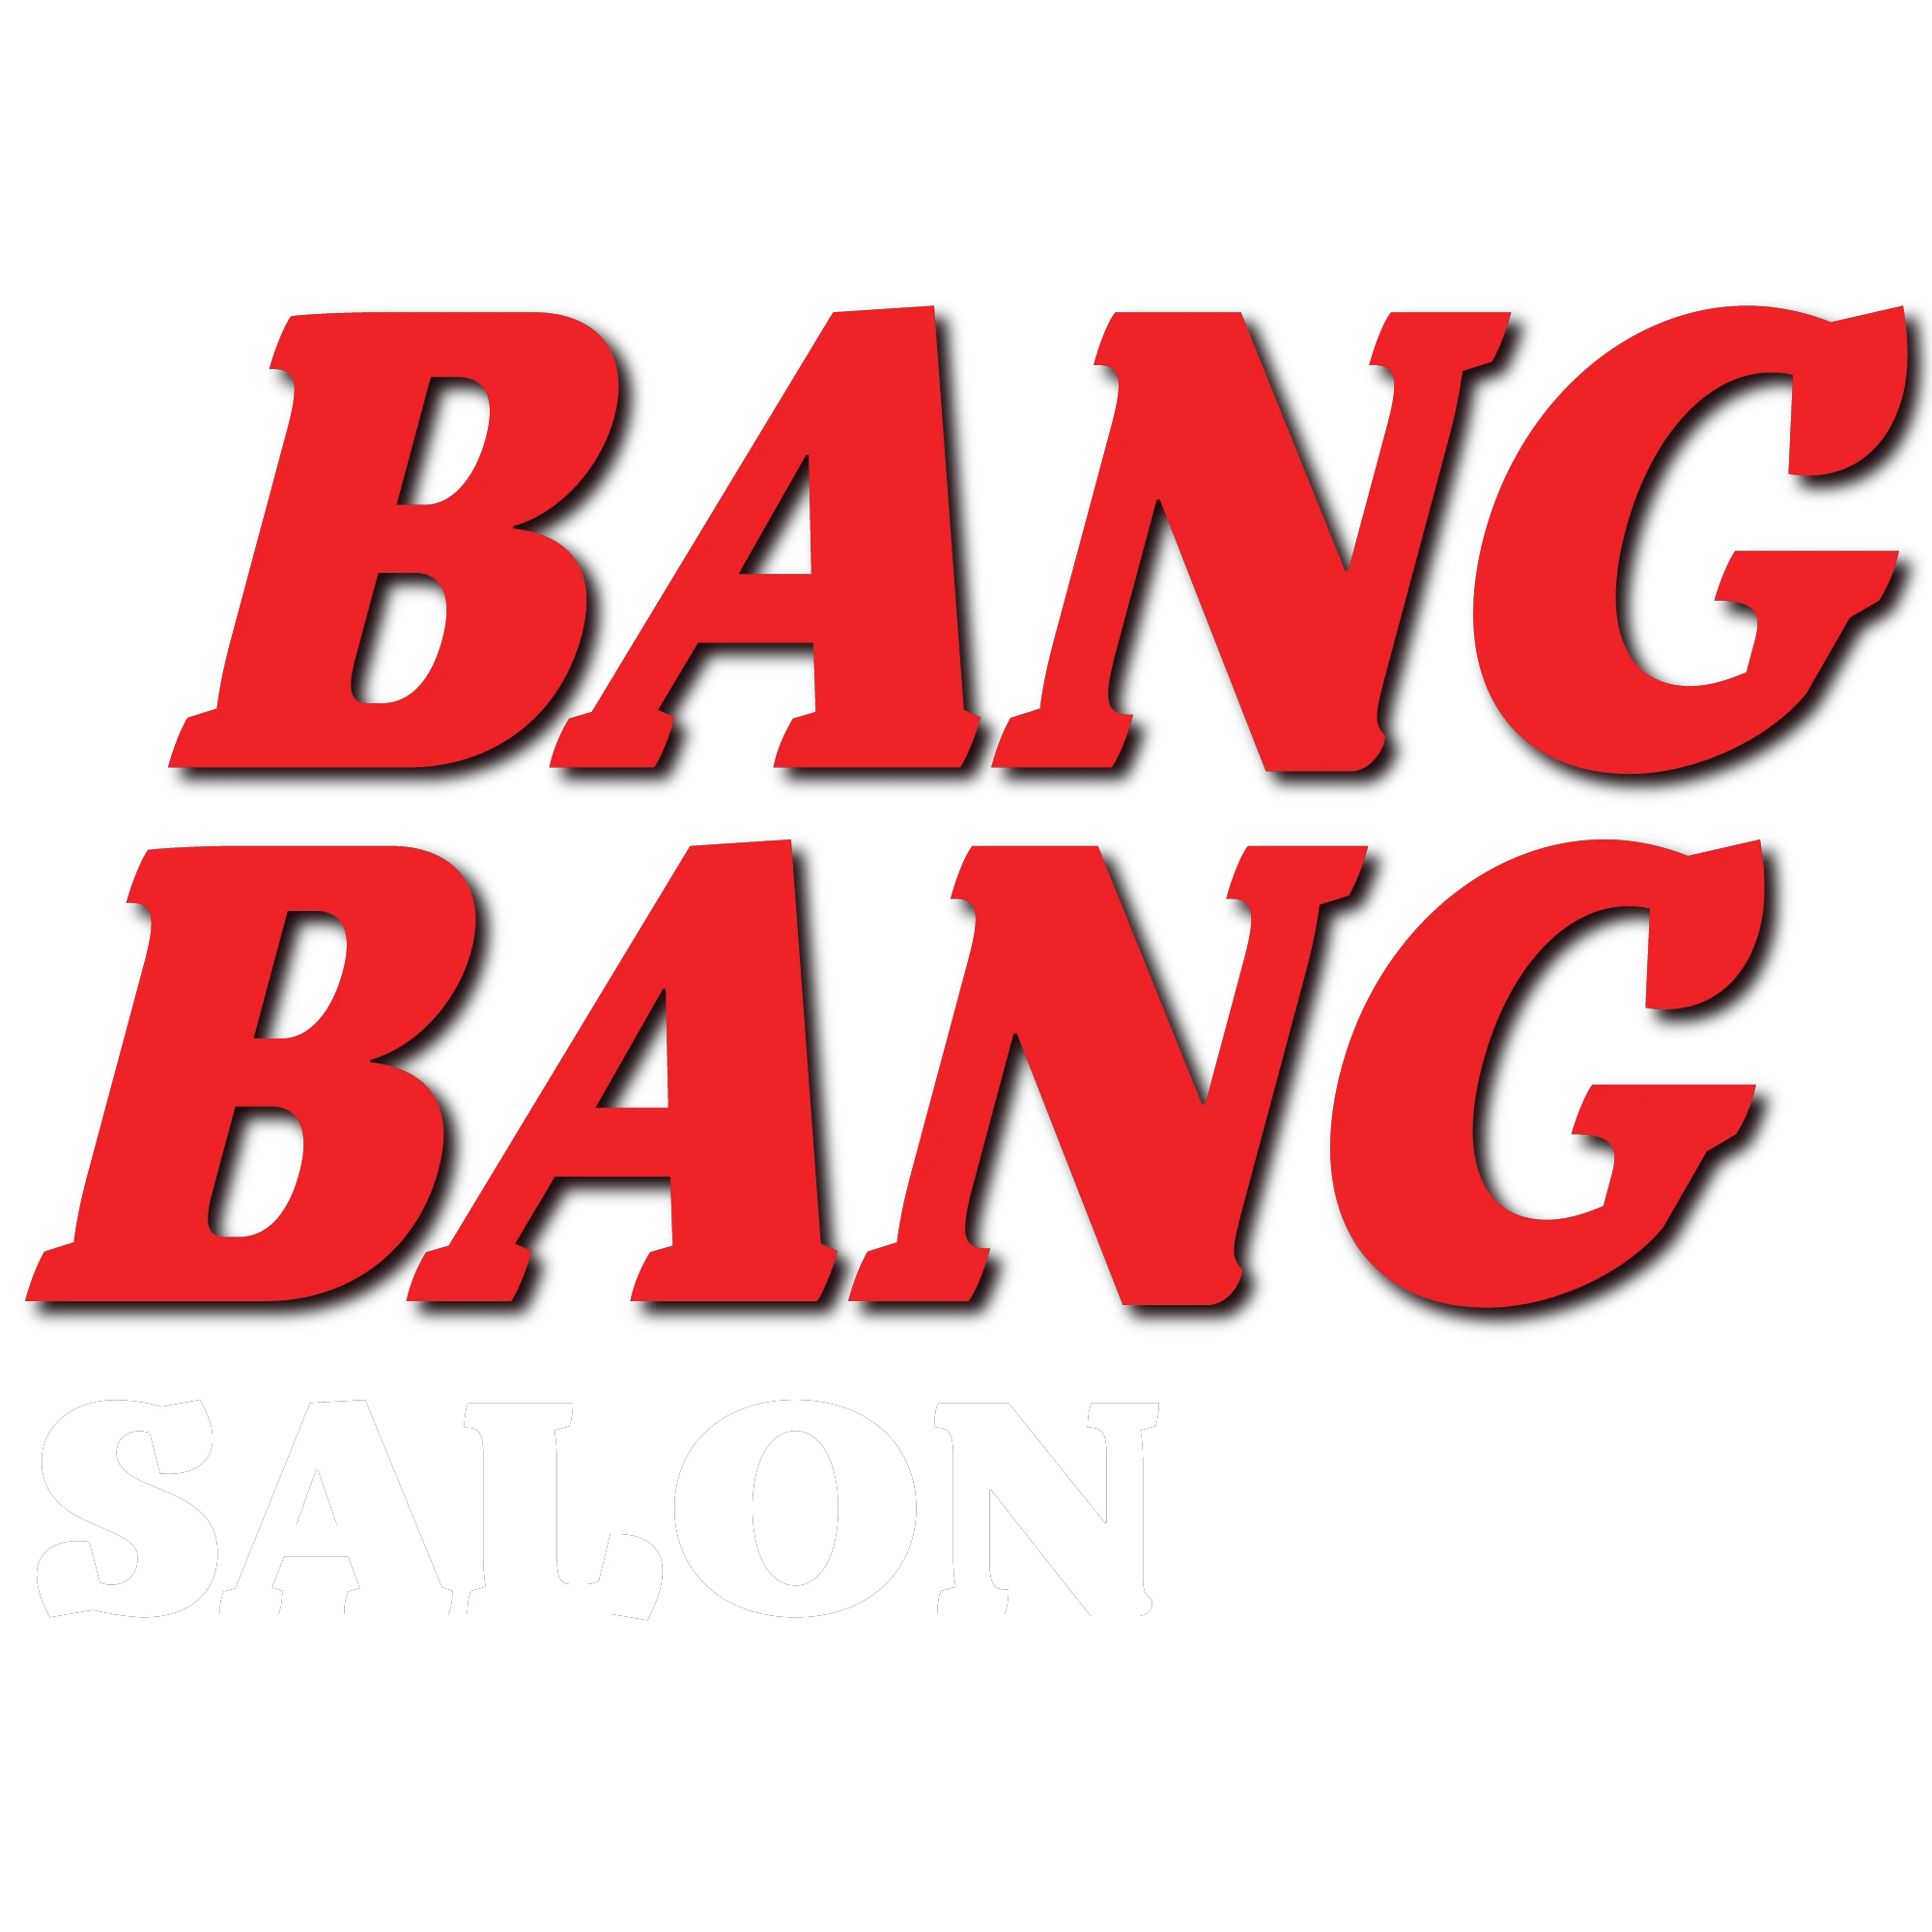 Bang Bang Salon